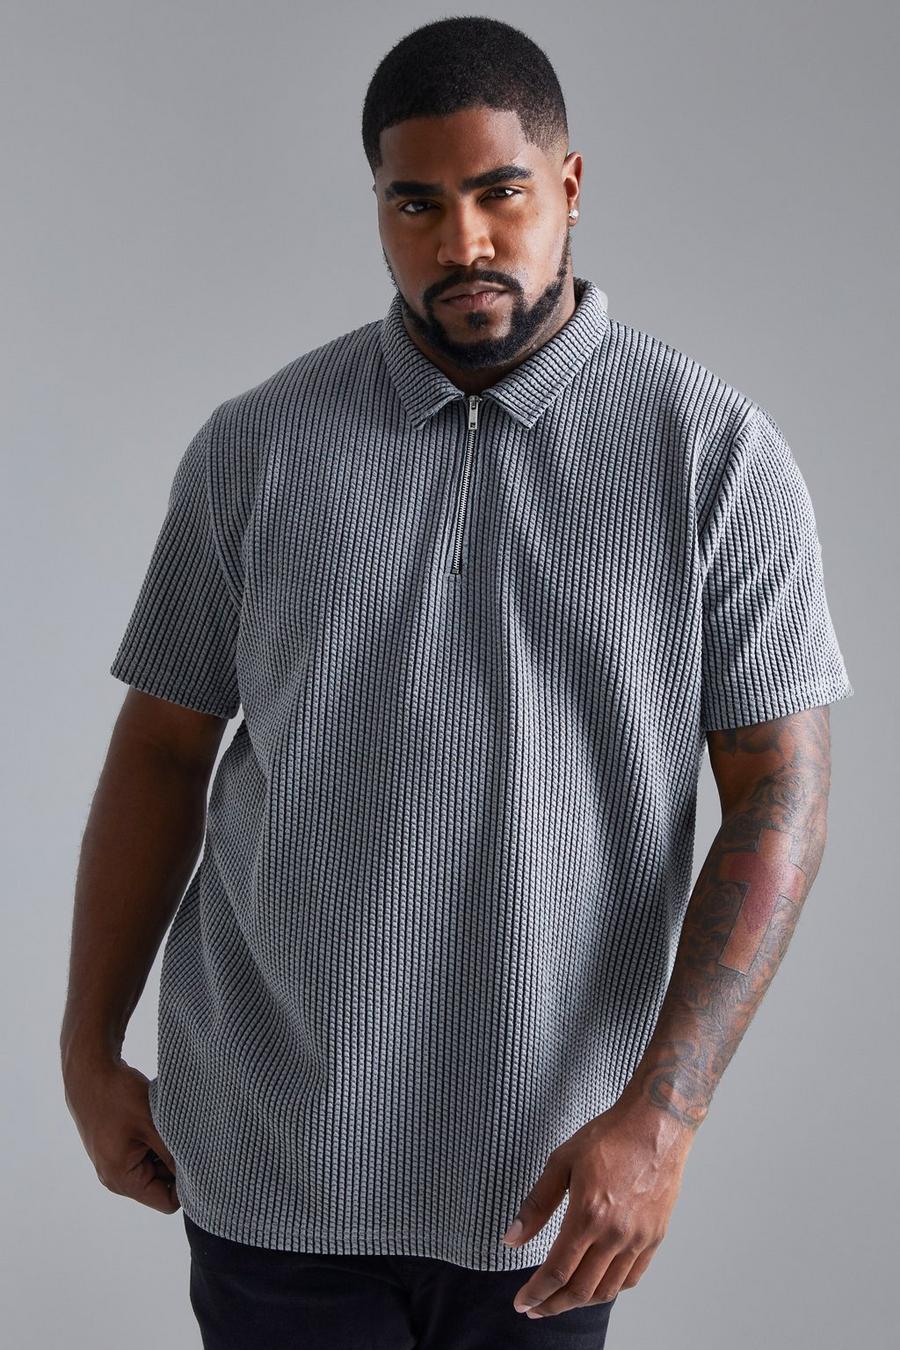 פחם gris חולצת פולו ג'קארד אלגנטית בשני צבעים עם רוכסן בצווארון, מידות גדולות